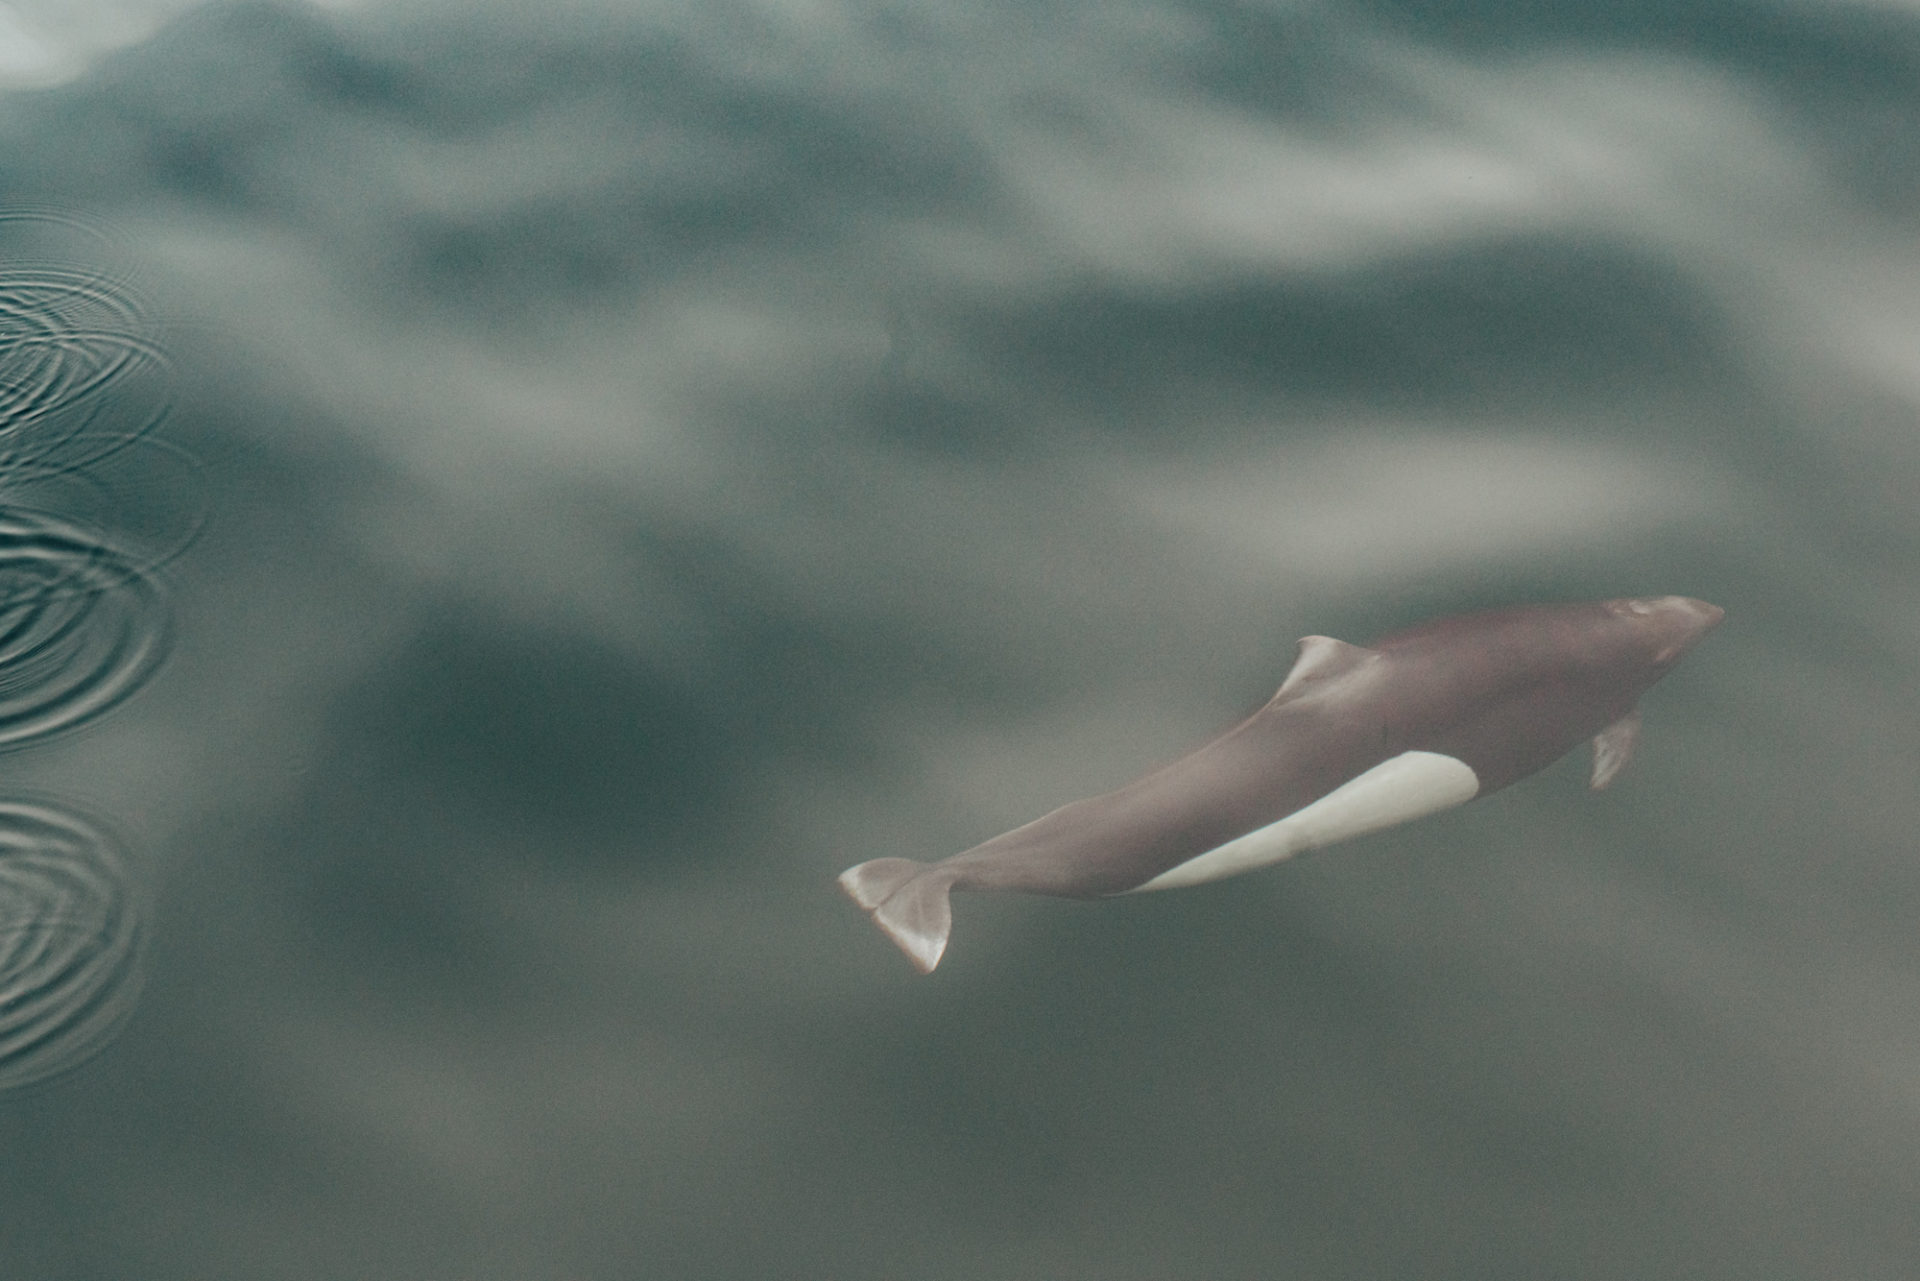 Canada British Columbia Vancouver Island Telegraph Cove dall porpoise dolphin 03738